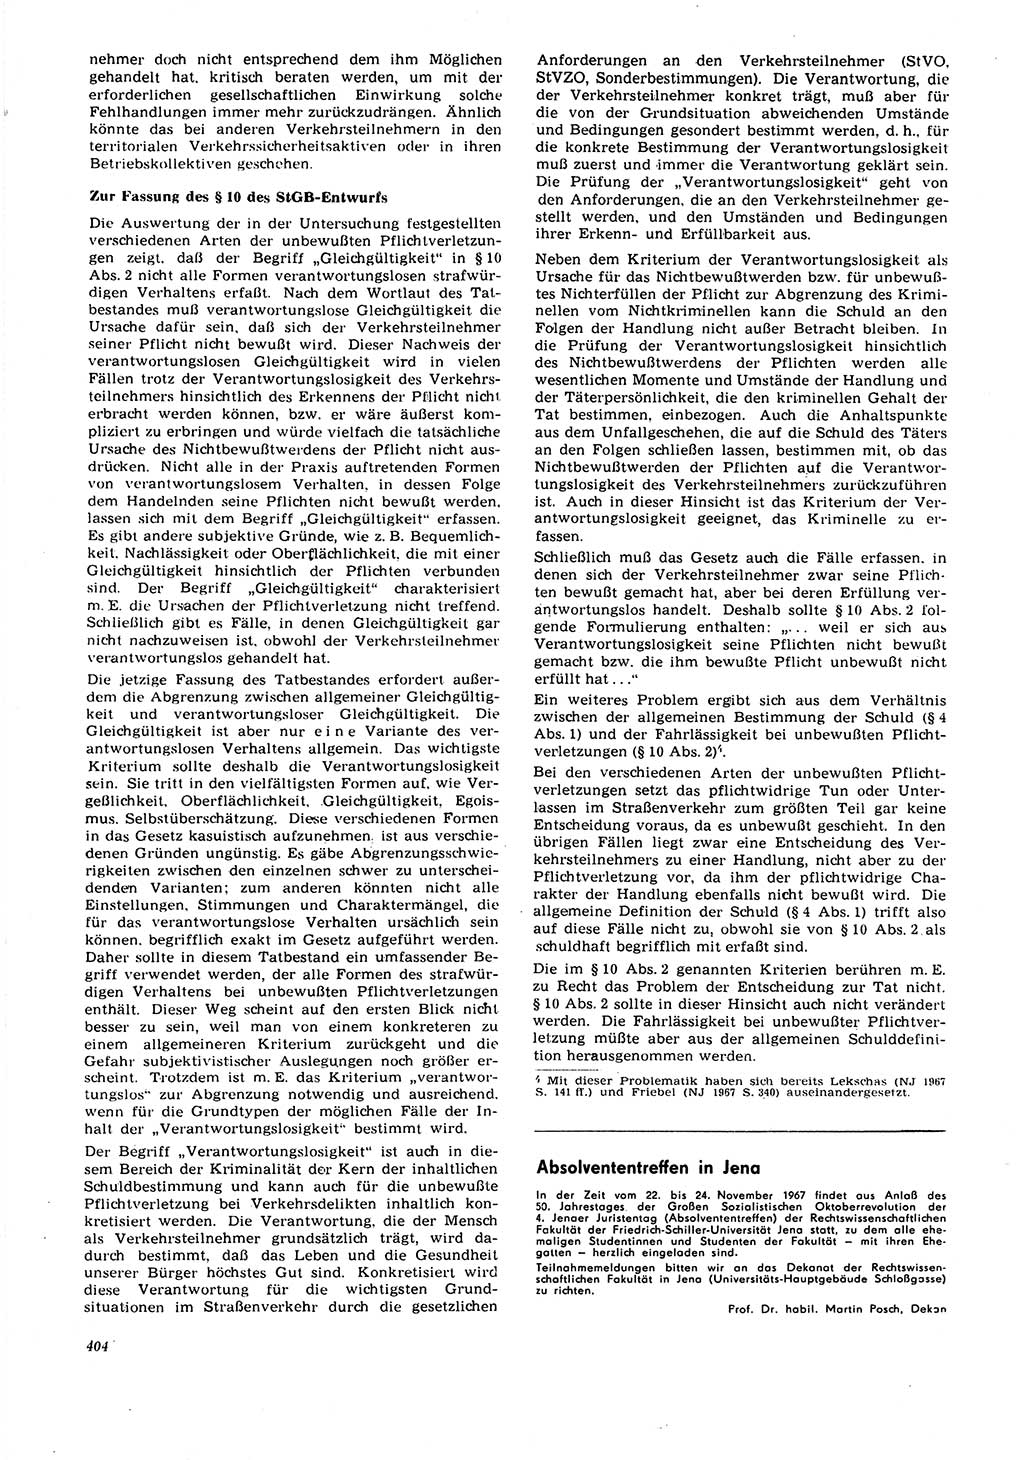 Neue Justiz (NJ), Zeitschrift für Recht und Rechtswissenschaft [Deutsche Demokratische Republik (DDR)], 21. Jahrgang 1967, Seite 404 (NJ DDR 1967, S. 404)